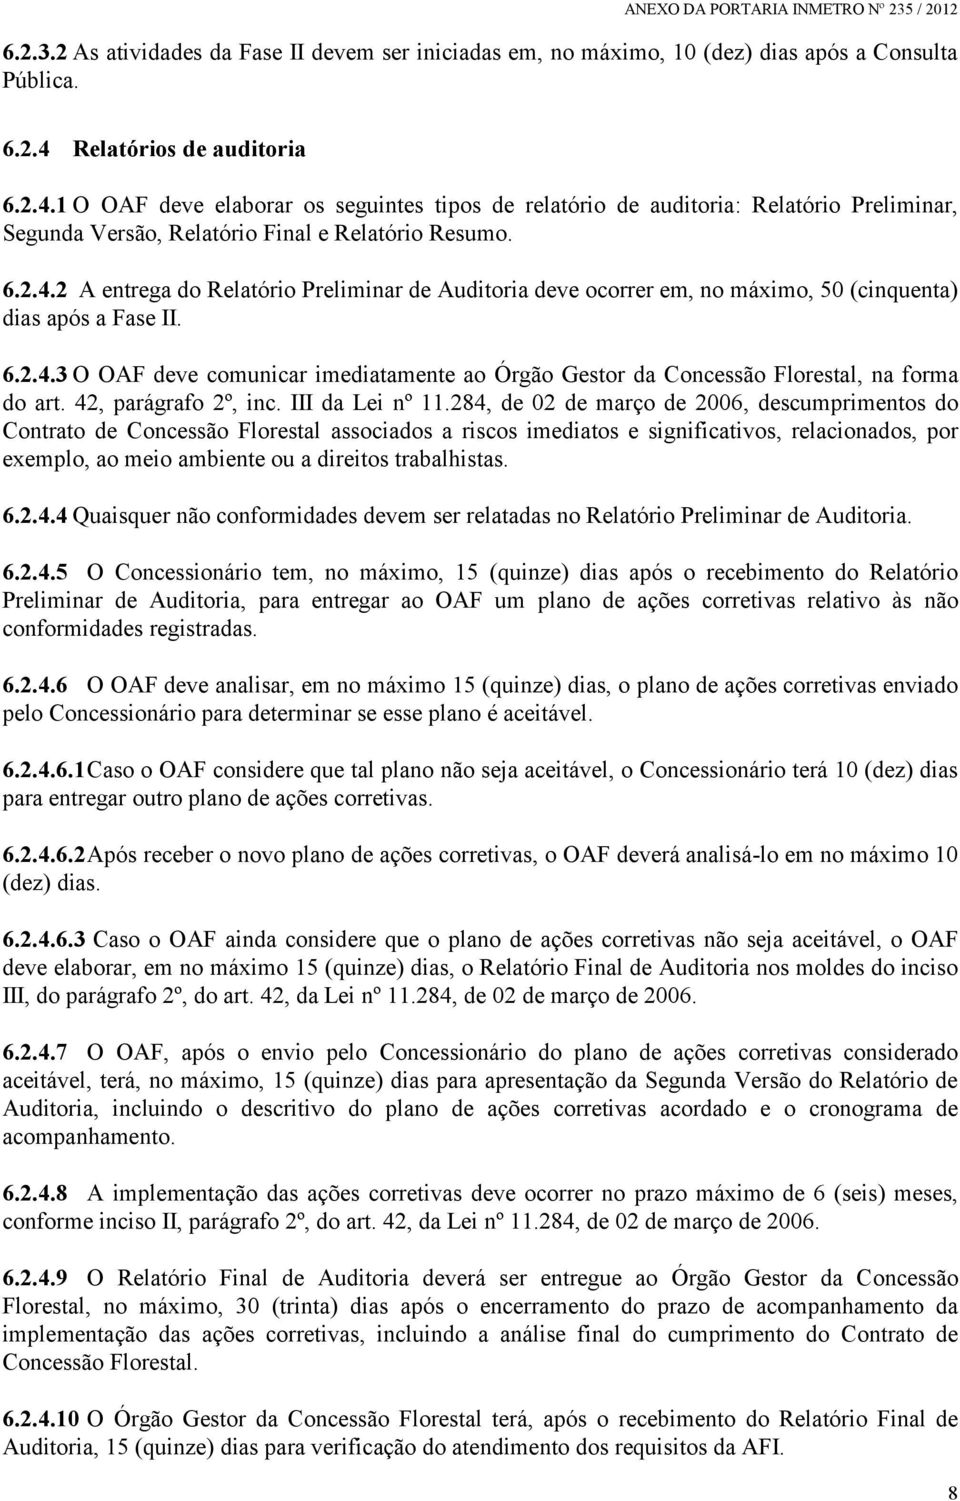 6.2.4.3 O OAF deve comunicar imediatamente ao Órgão Gestor da Concessão Florestal, na forma do art. 42, parágrafo 2º, inc. III da Lei nº 11.